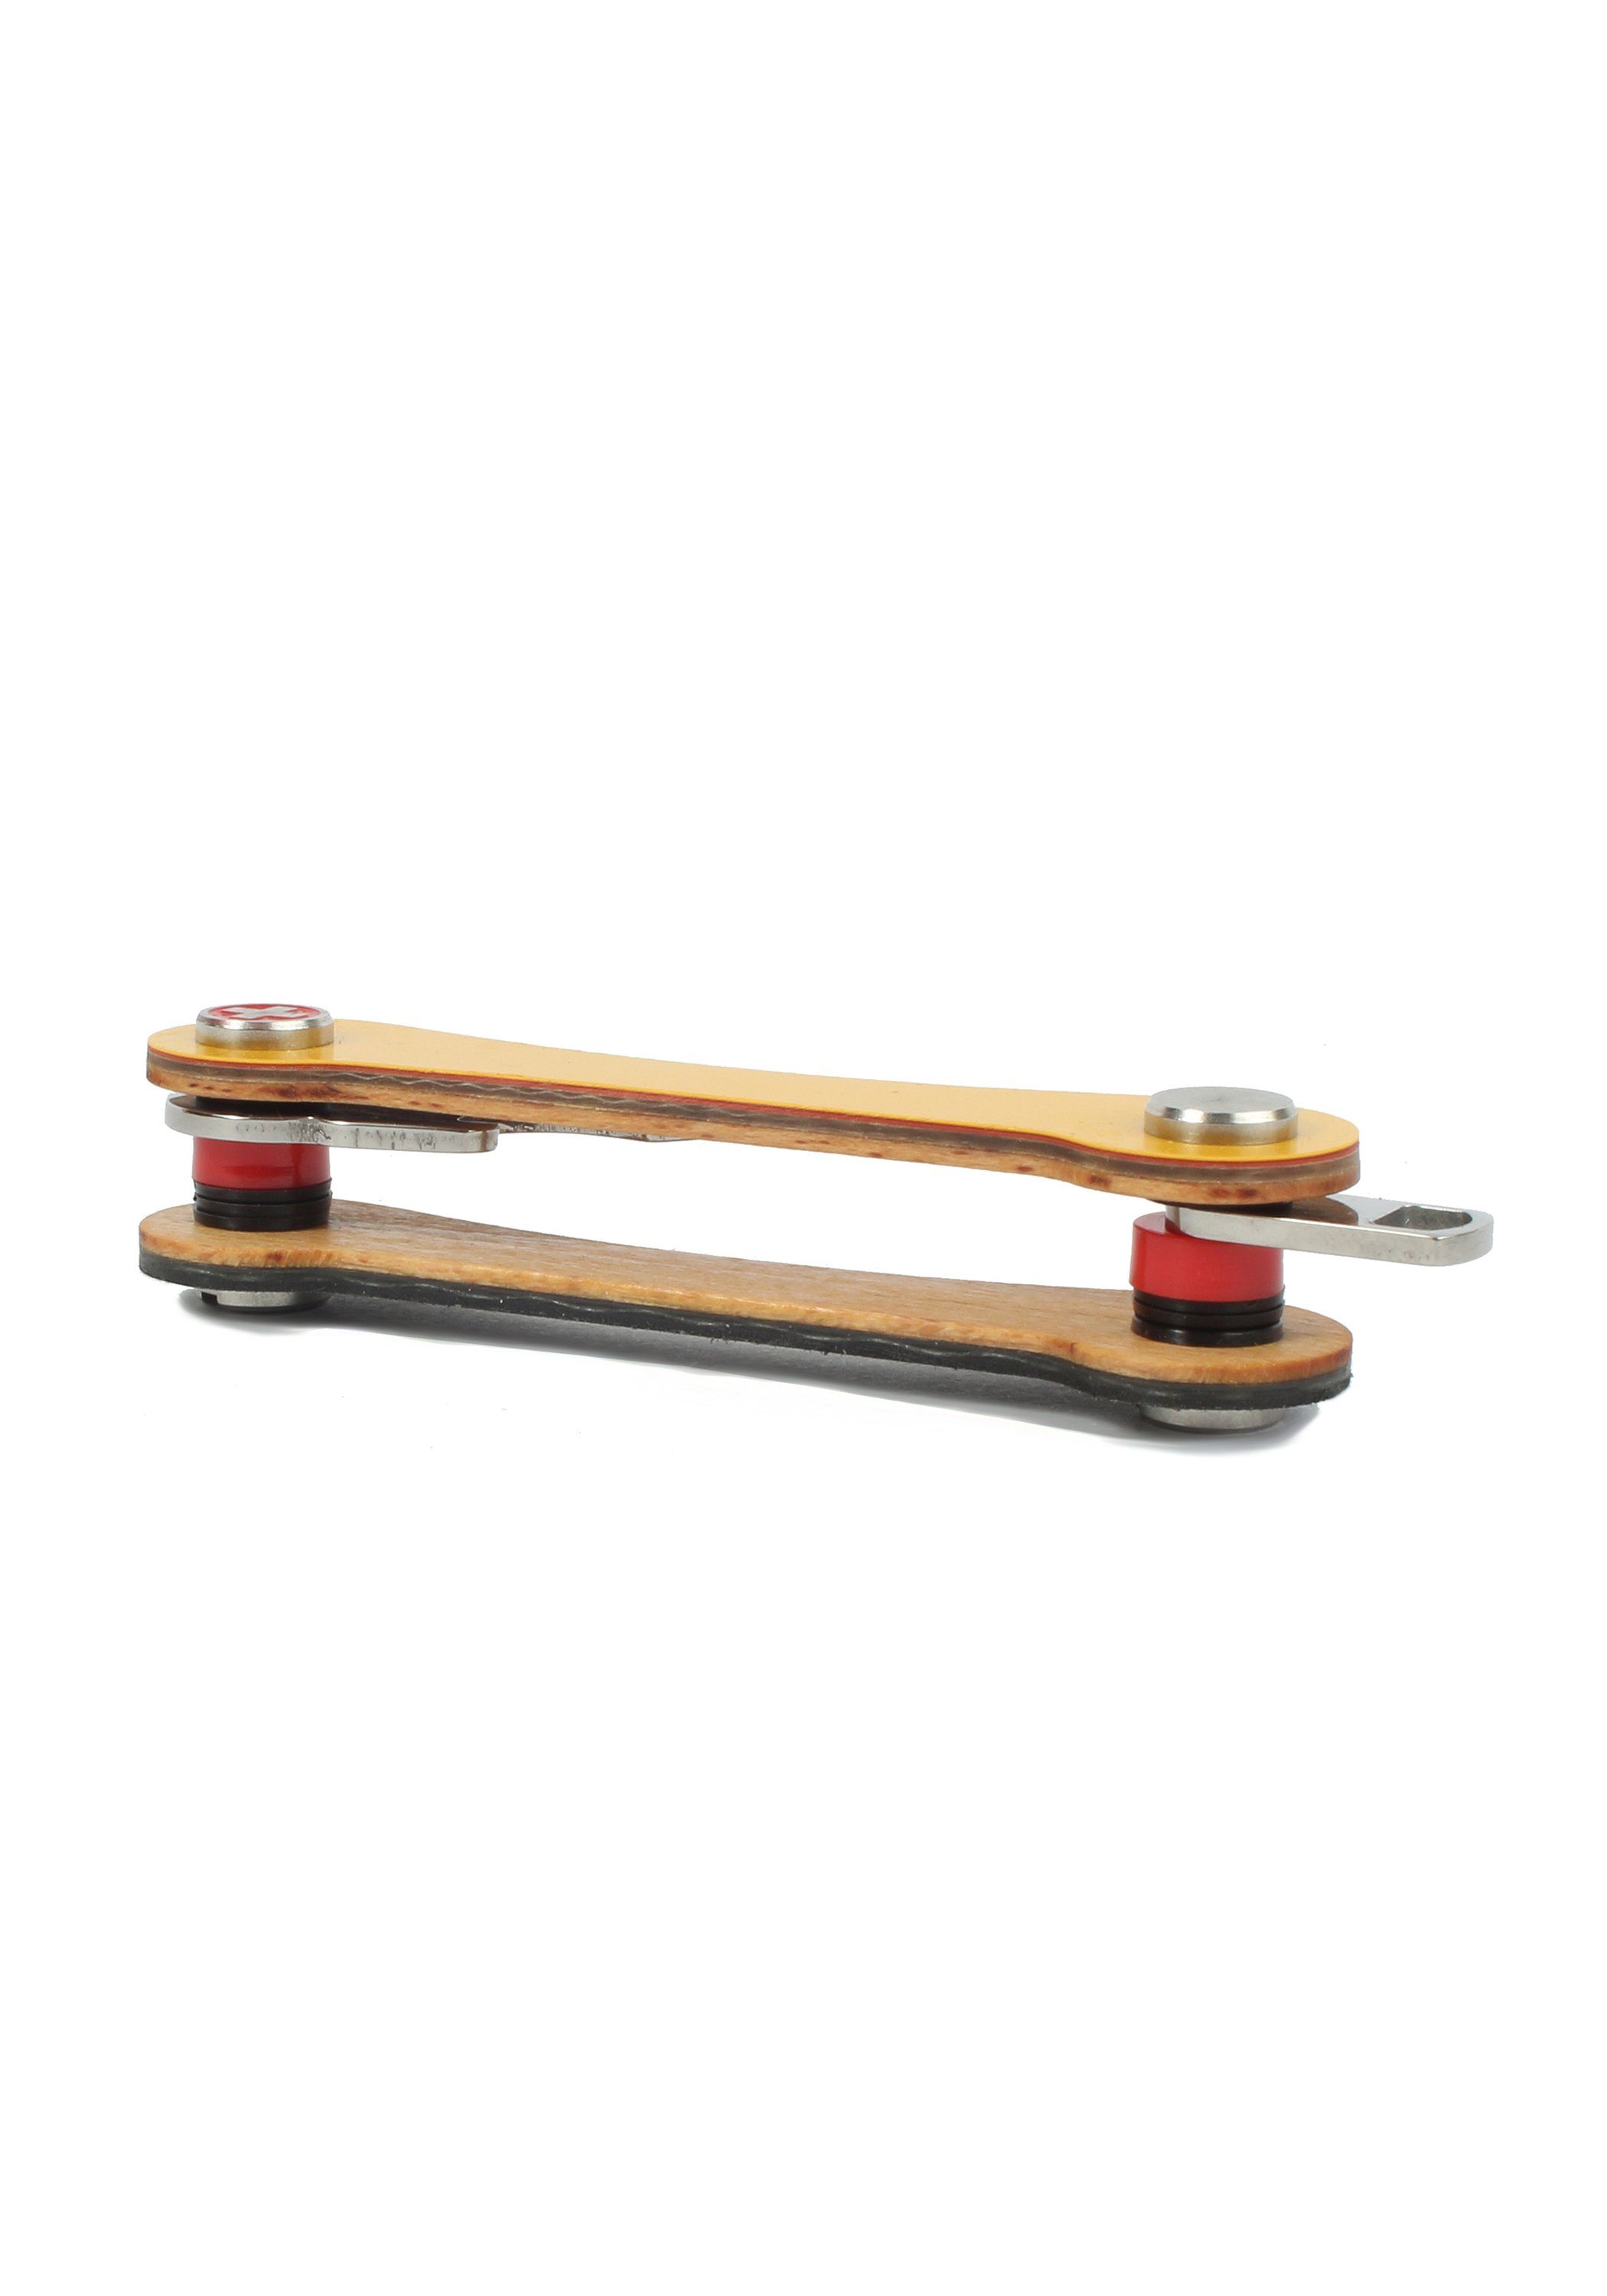 SWISS S1, orange Snowboard-Ski made Schlüsselanhänger keycabins